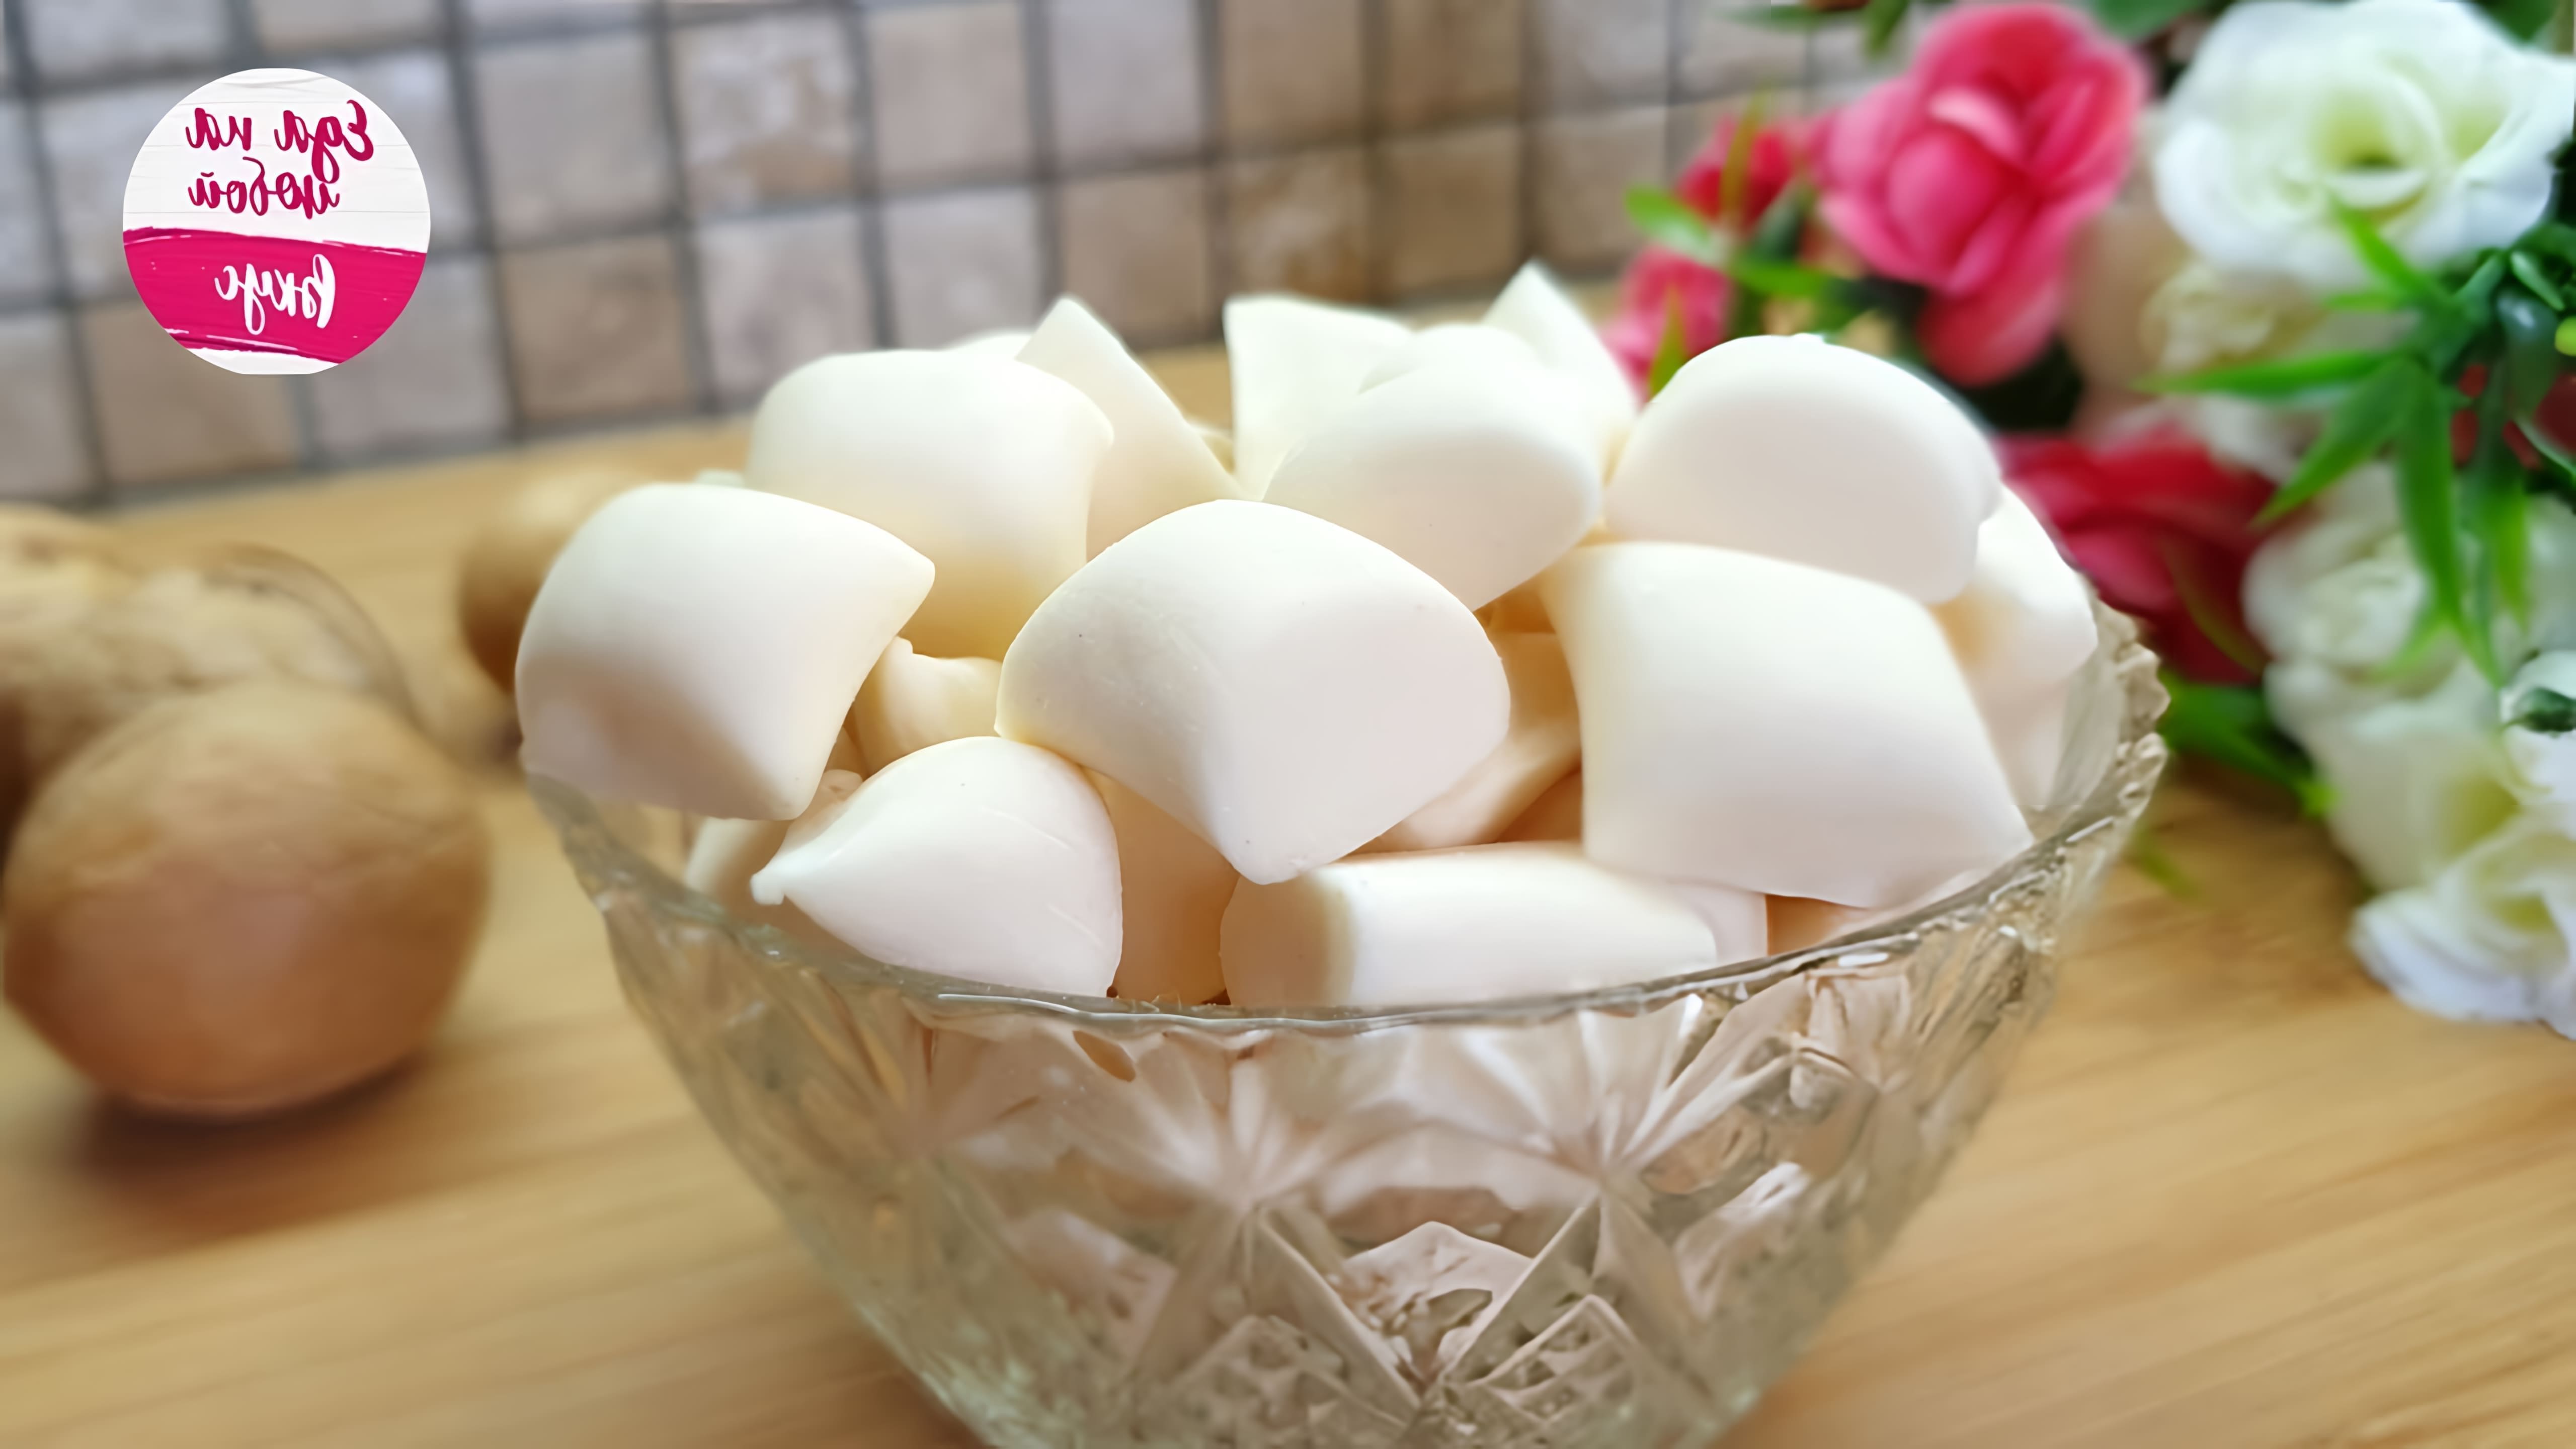 В этом видео демонстрируется процесс приготовления карамельных конфет